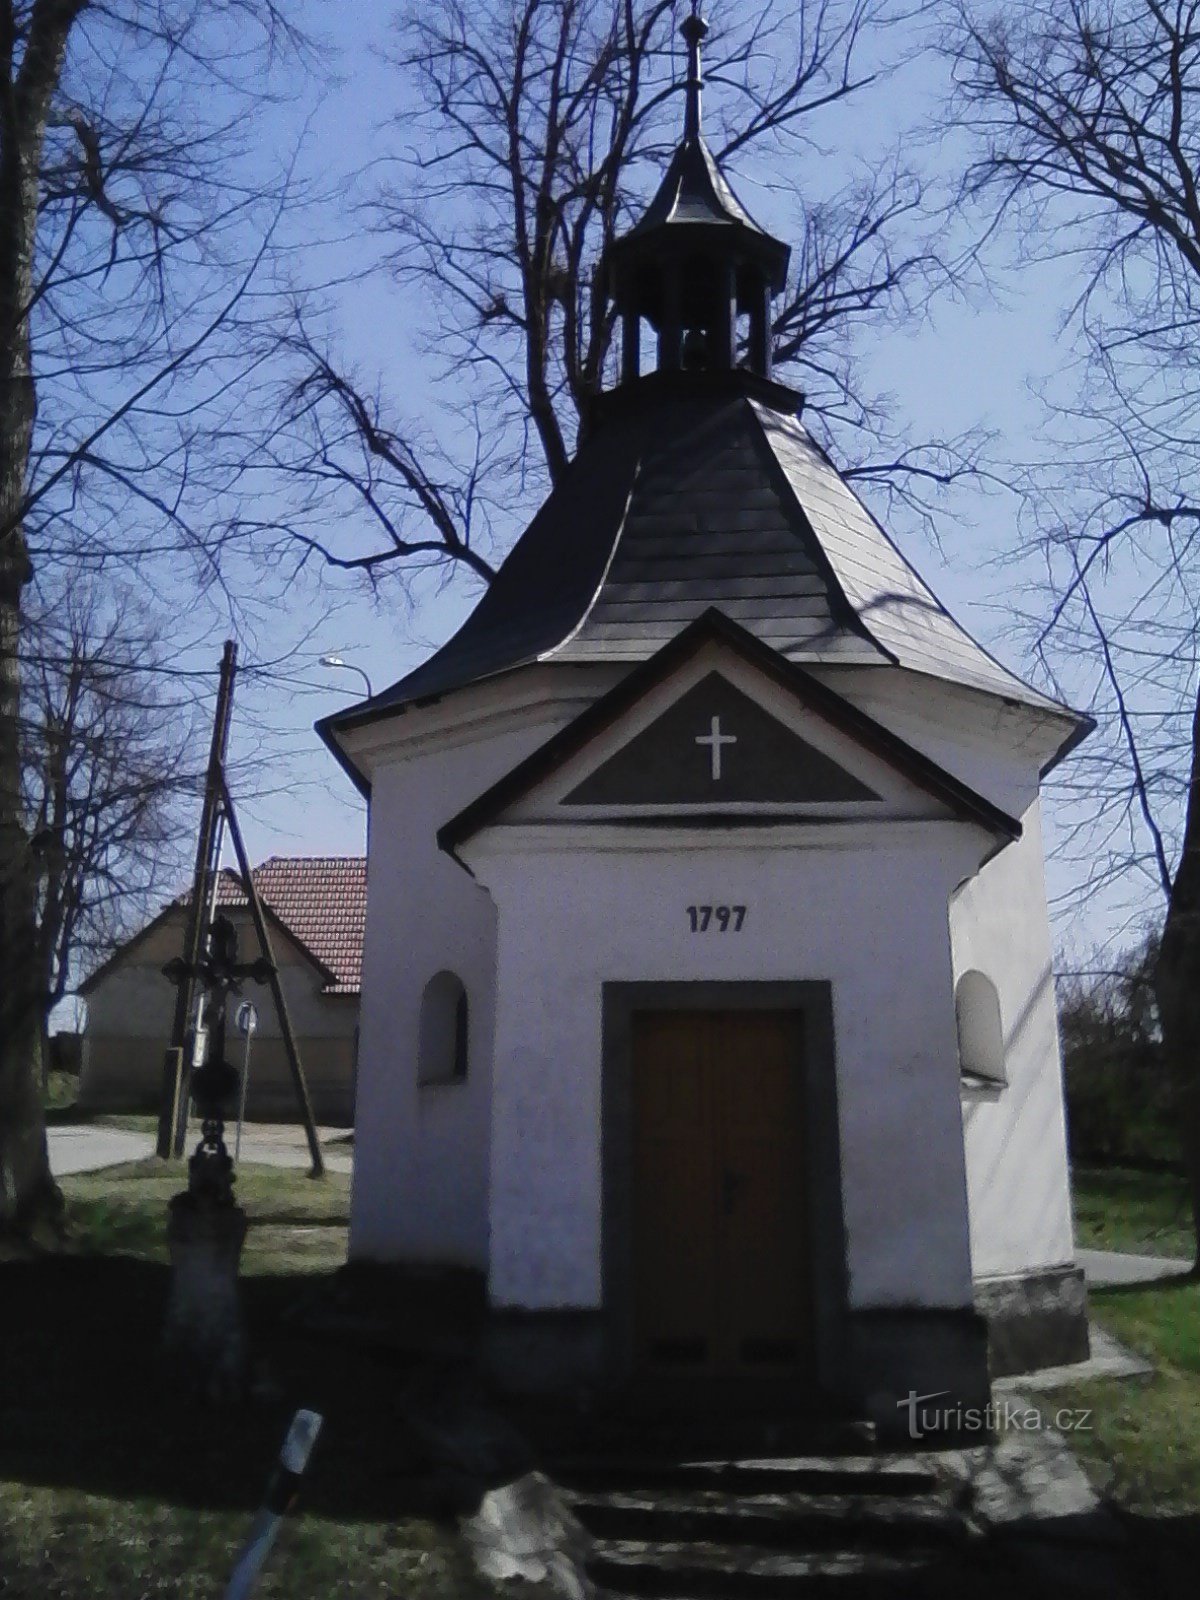 2. Nhà nguyện Baroque nơi đăng quang của Đức Trinh Nữ Maria ở Litohošt.